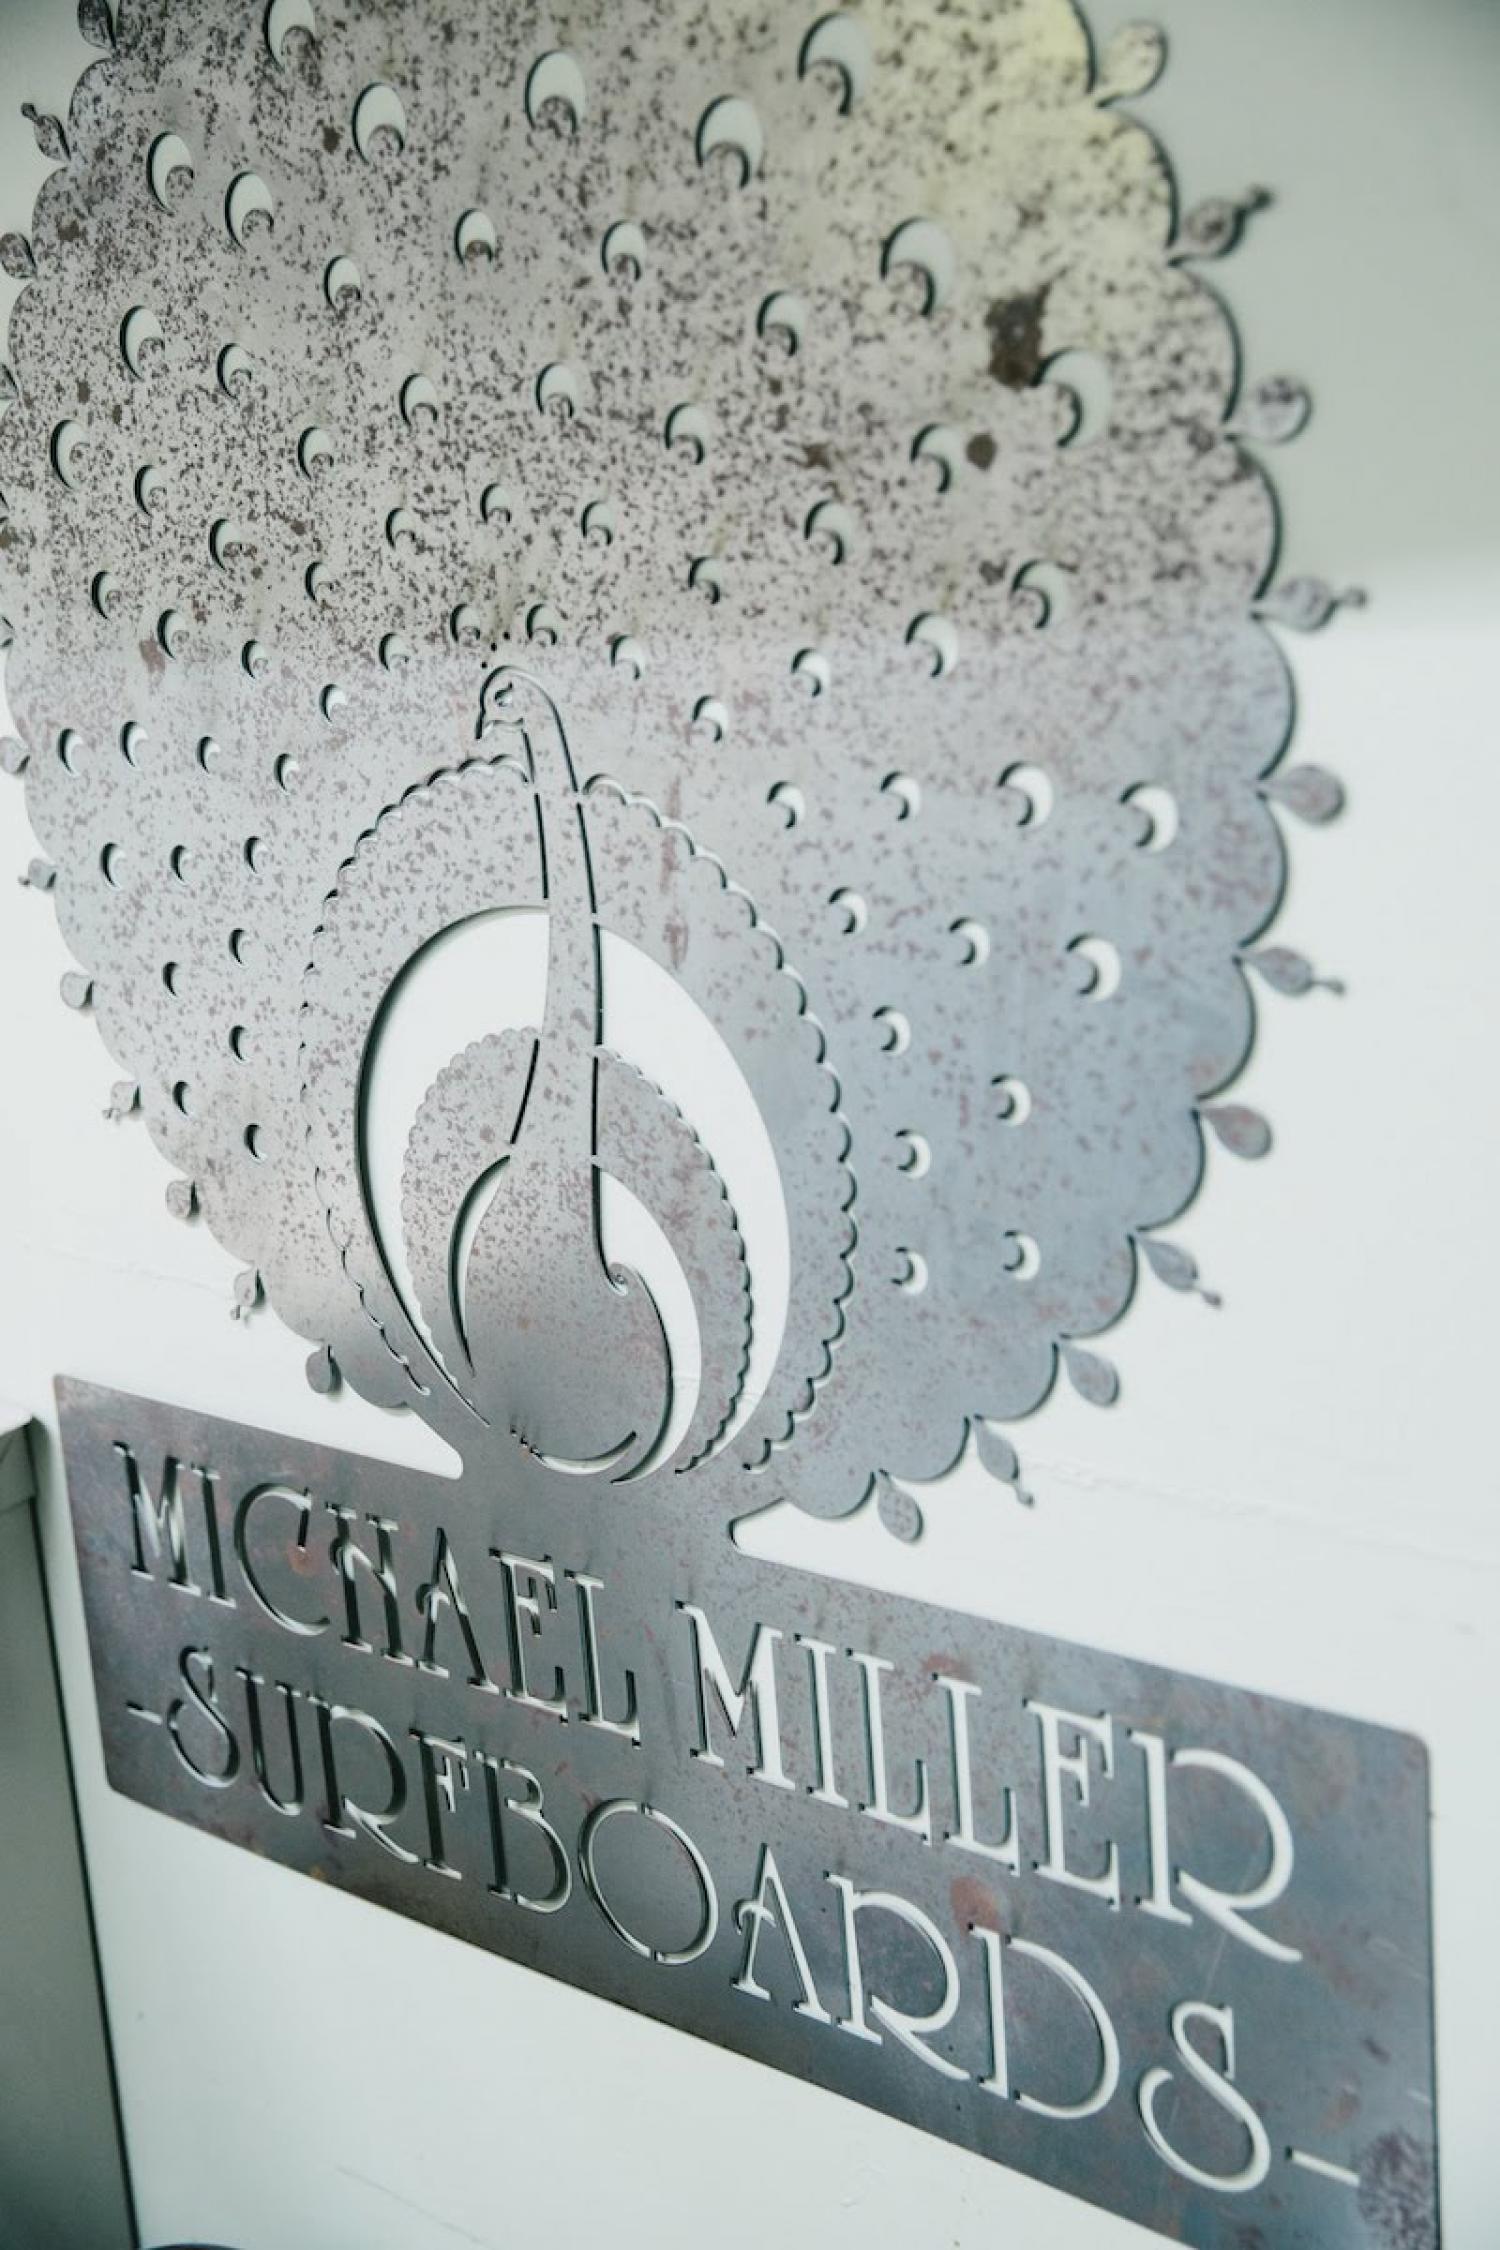 Michael Miller Surfboards 1